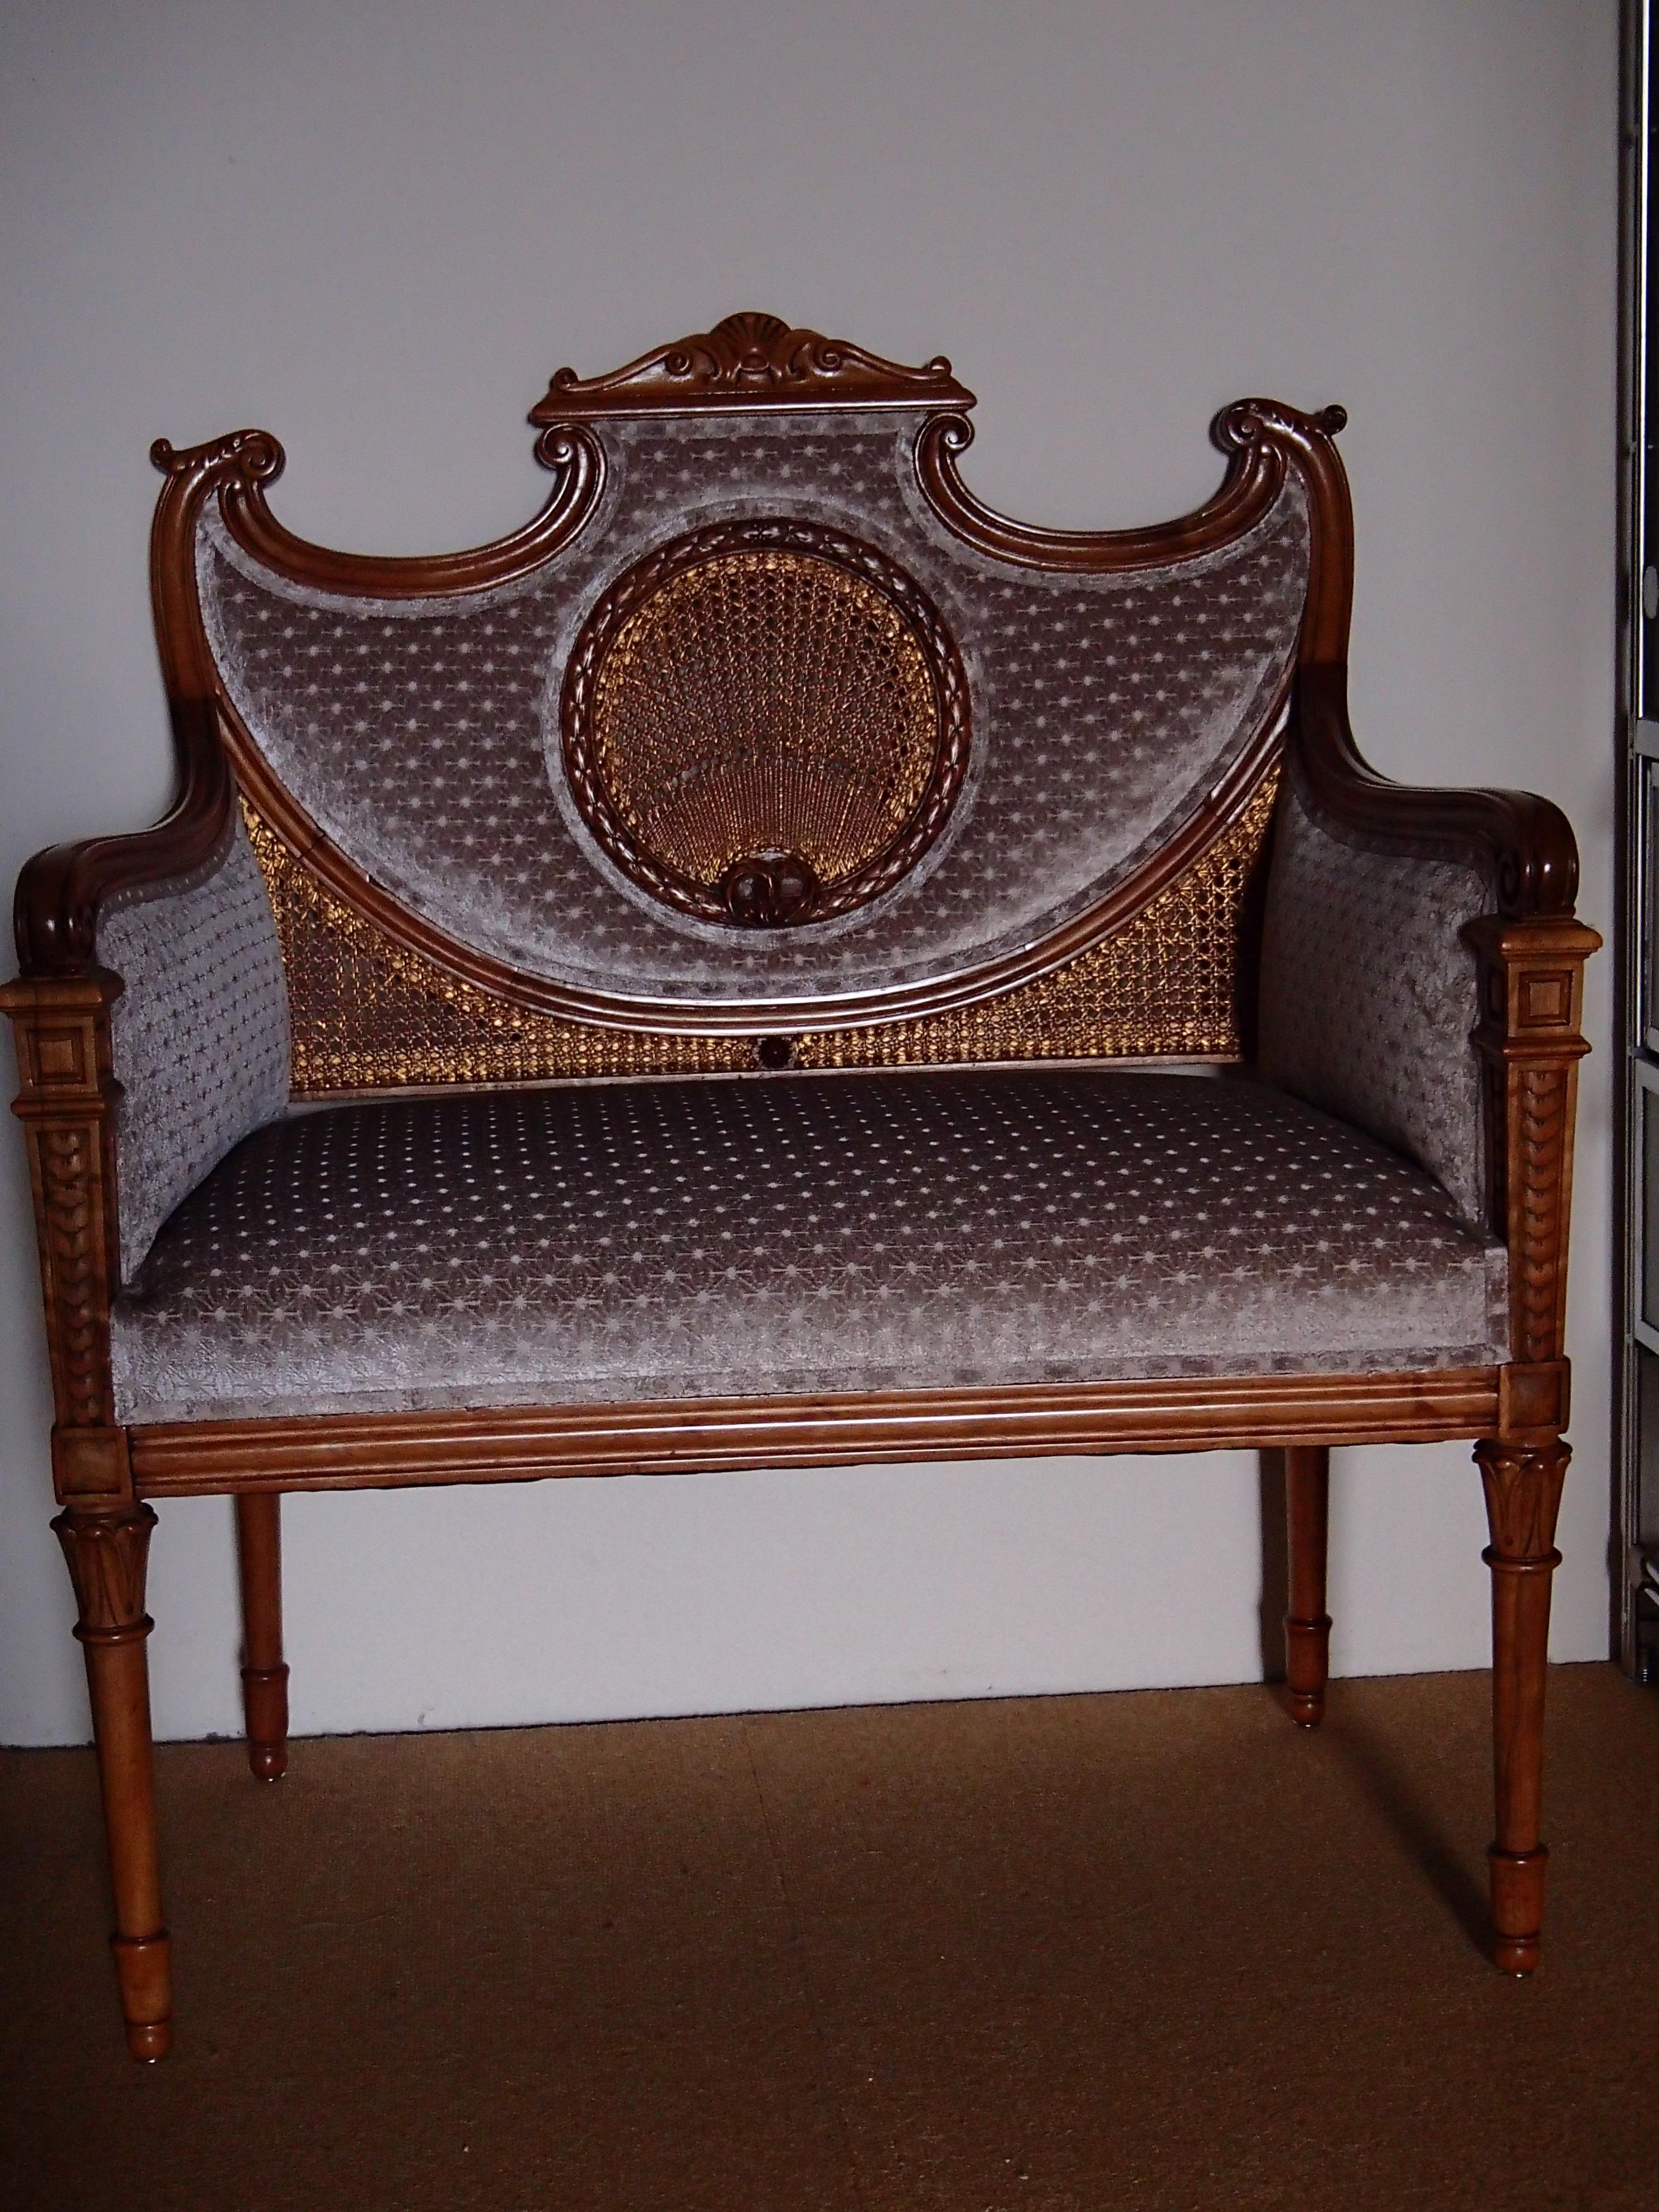 Petit canapé Louis XV noyer et velours beige pâle vannerie dorée, peut être placé au milieu de la pièce, utilisé pour l'entrée, la chambre à coucher ou même la chambre d'enfants
Le bois est restauré, l'assise et le dossier sont retapissés et